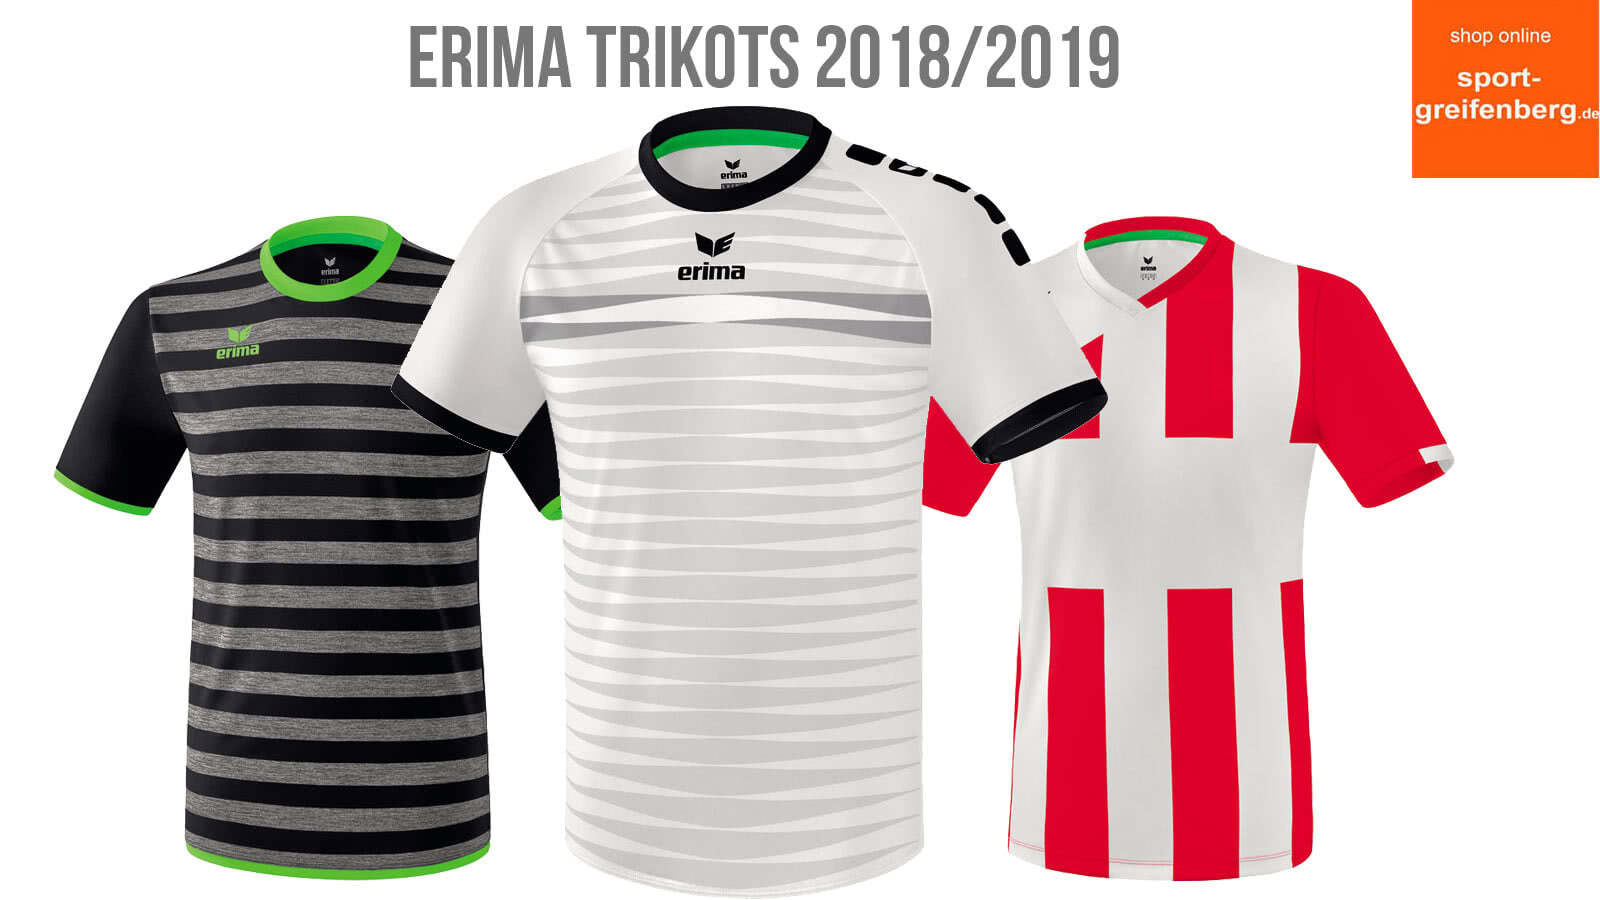 Das sind die Erima Trikots 2018/2019 für Fußball, Handball und Co